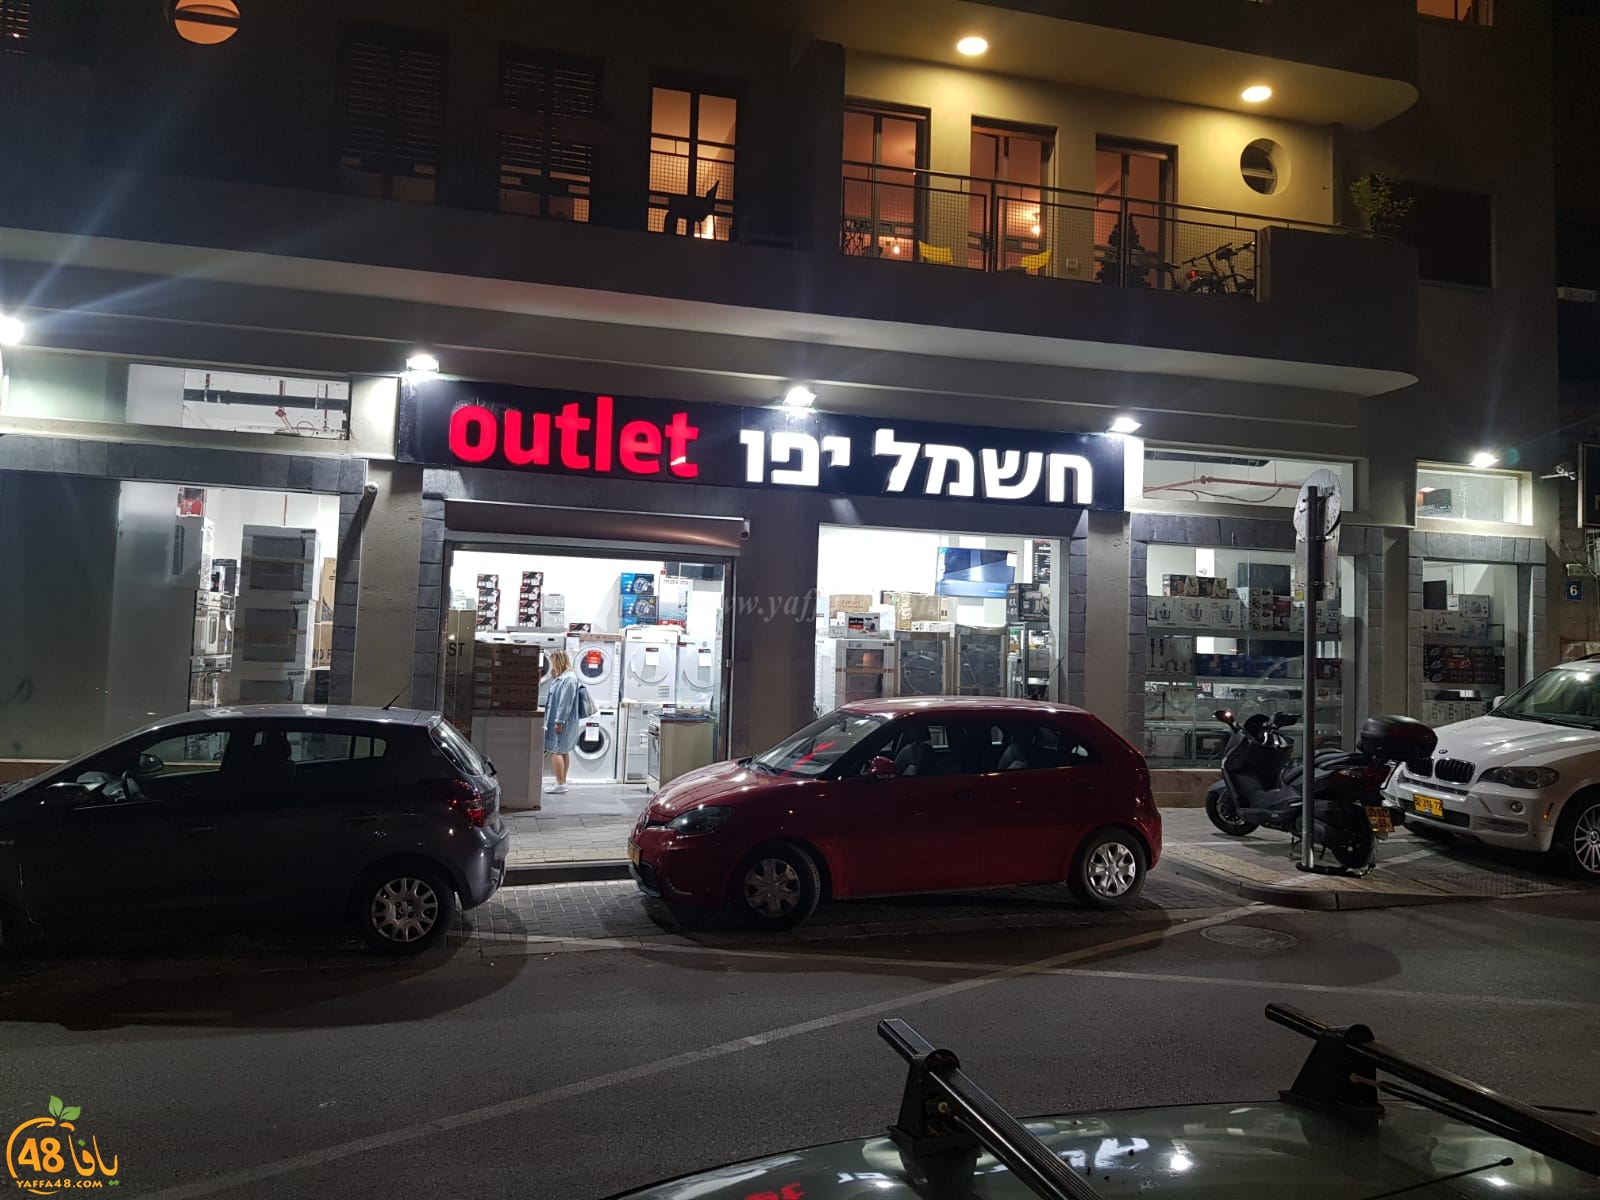  يافا: صالة عرض كهرباء يافا Outlet تنتقل الى شارع ابن شوشان 8